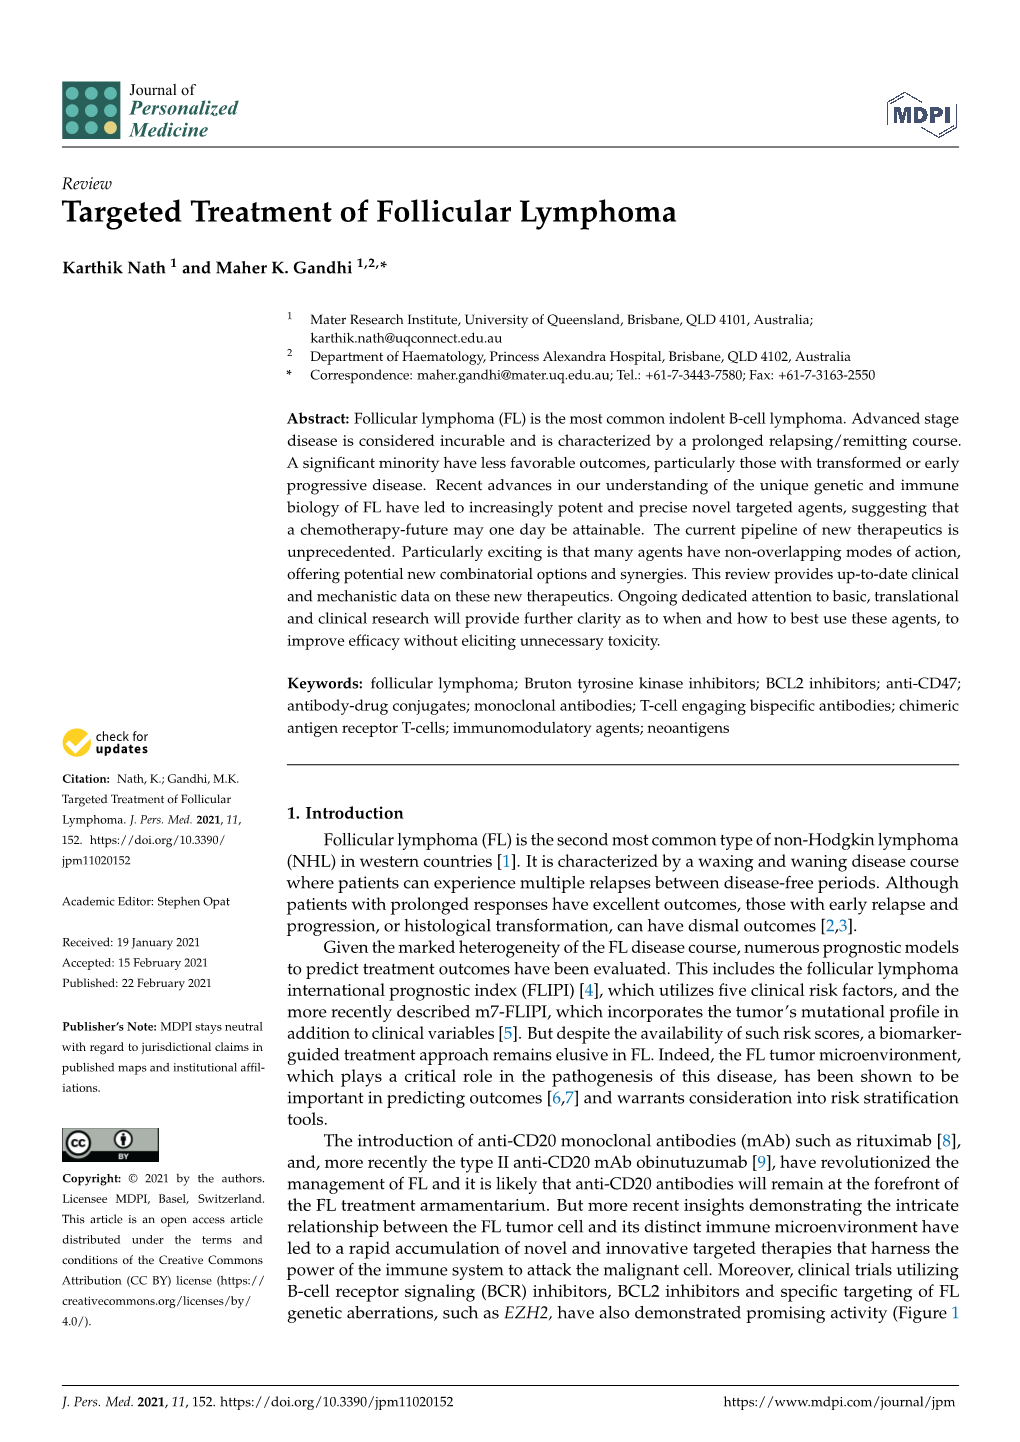 Targeted Treatment of Follicular Lymphoma